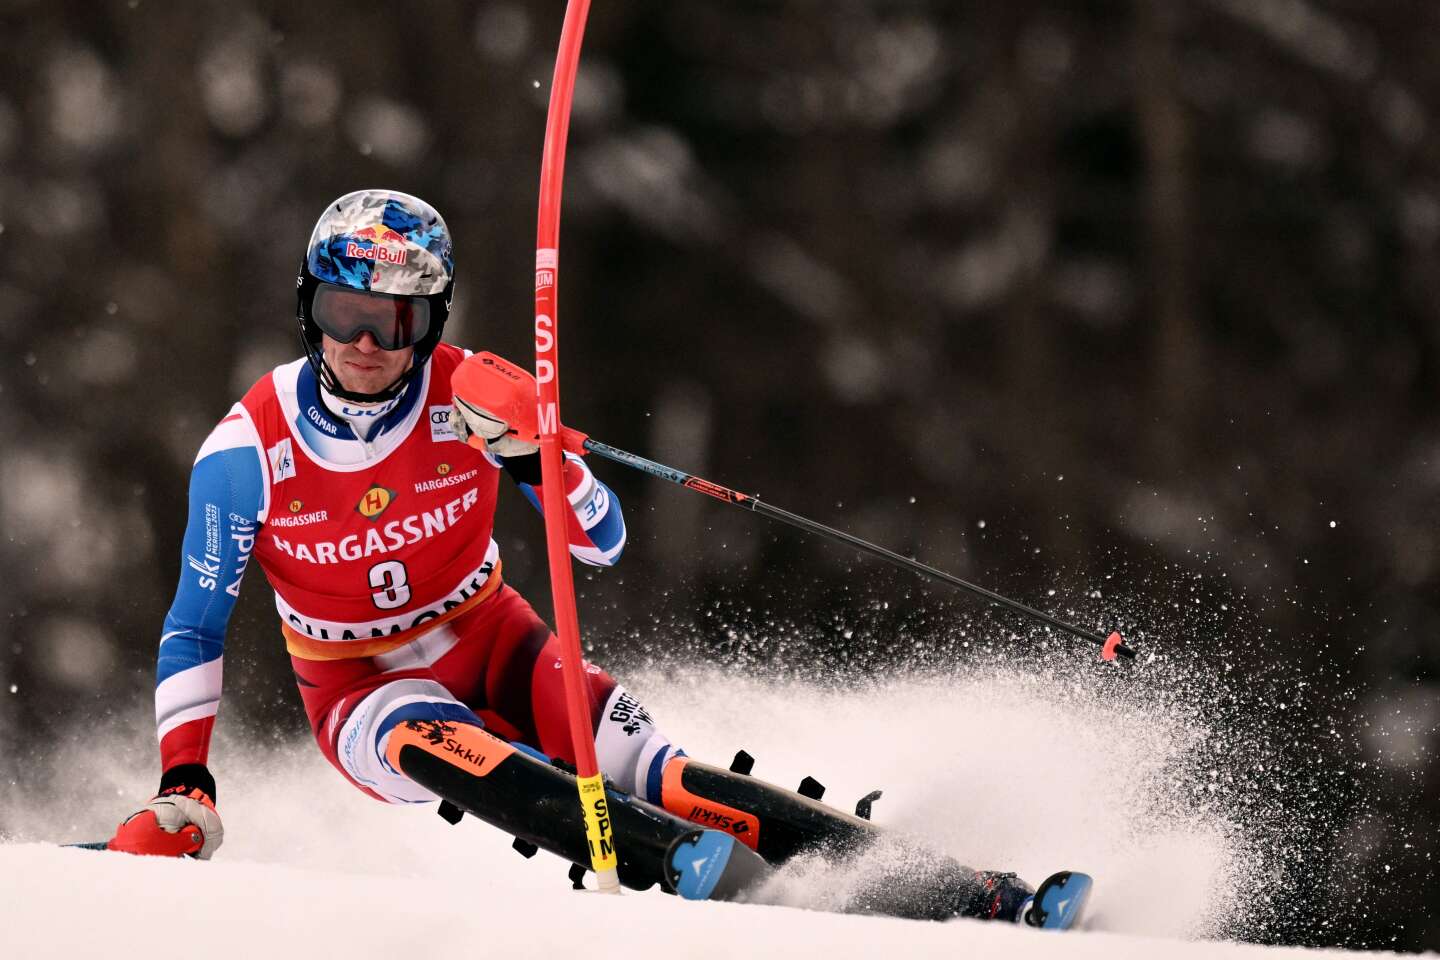 Ski alpin : un abandon et des motifs d'espoirs pour Clément Noël à